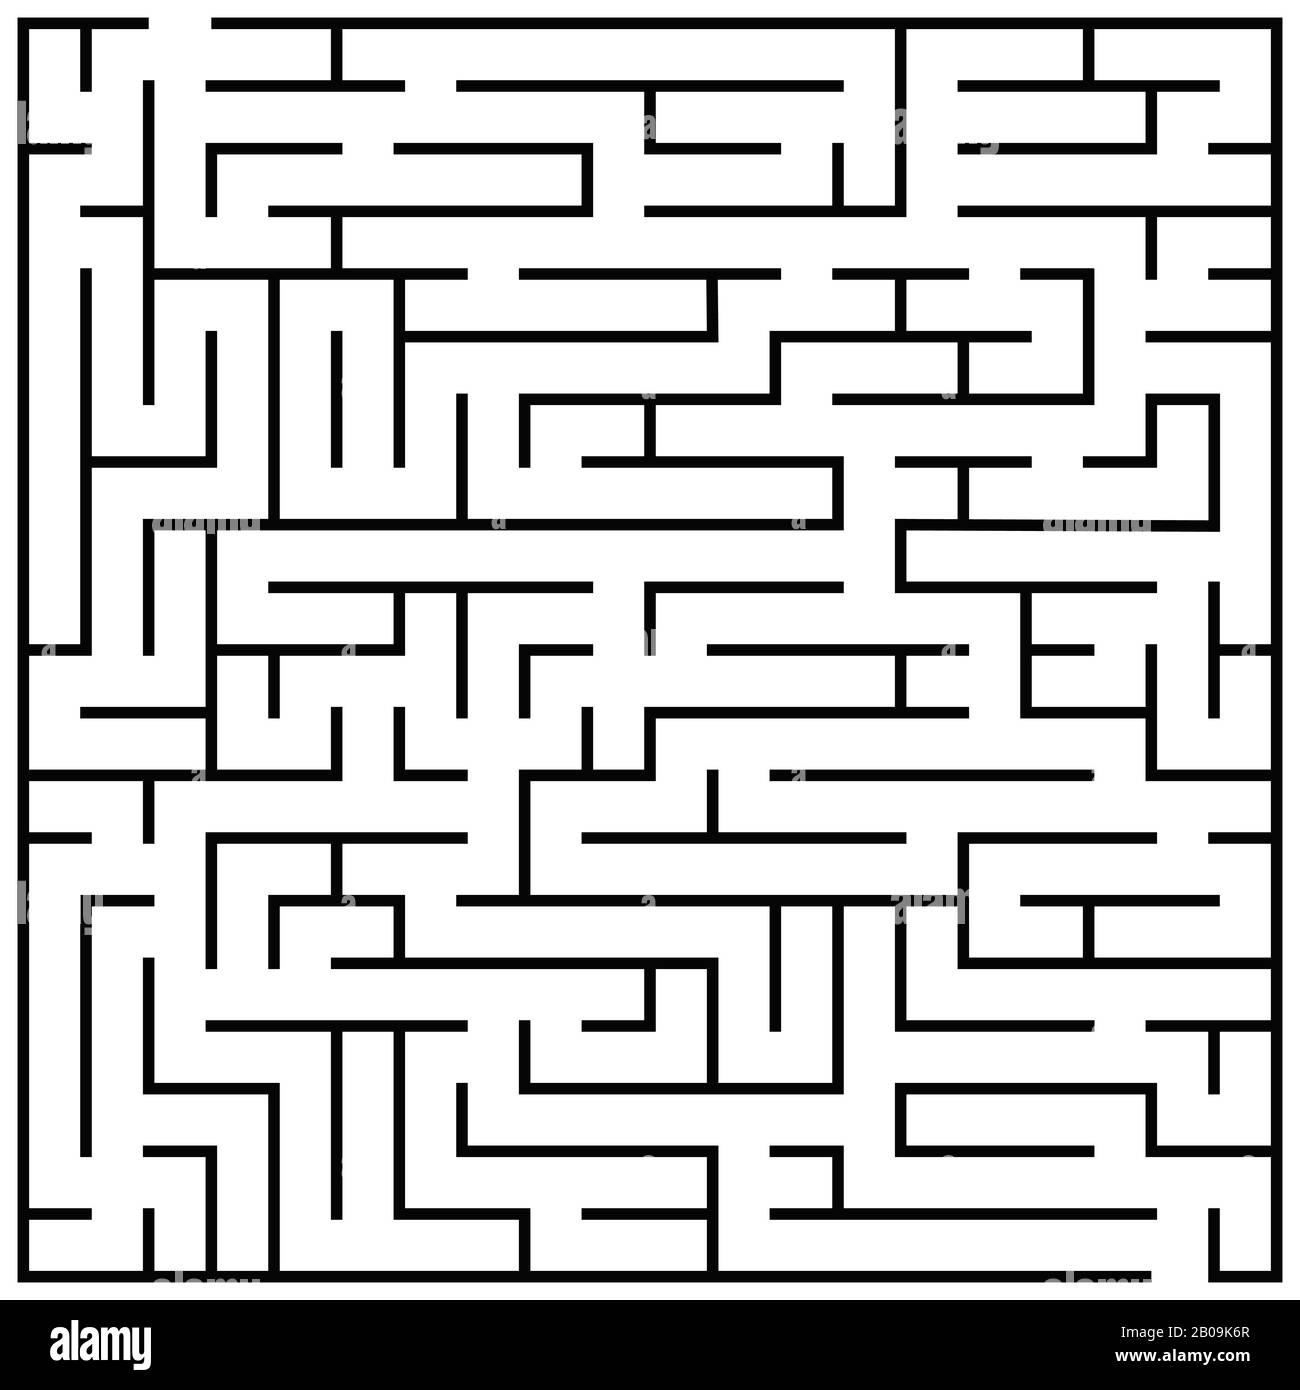 Puzzle de labyrinthe, labyrinthe cerveau teaser enfants jeu vecteur. Illustration du jeu de labyrinthe, labyrinthe pour jouer les enfants Illustration de Vecteur